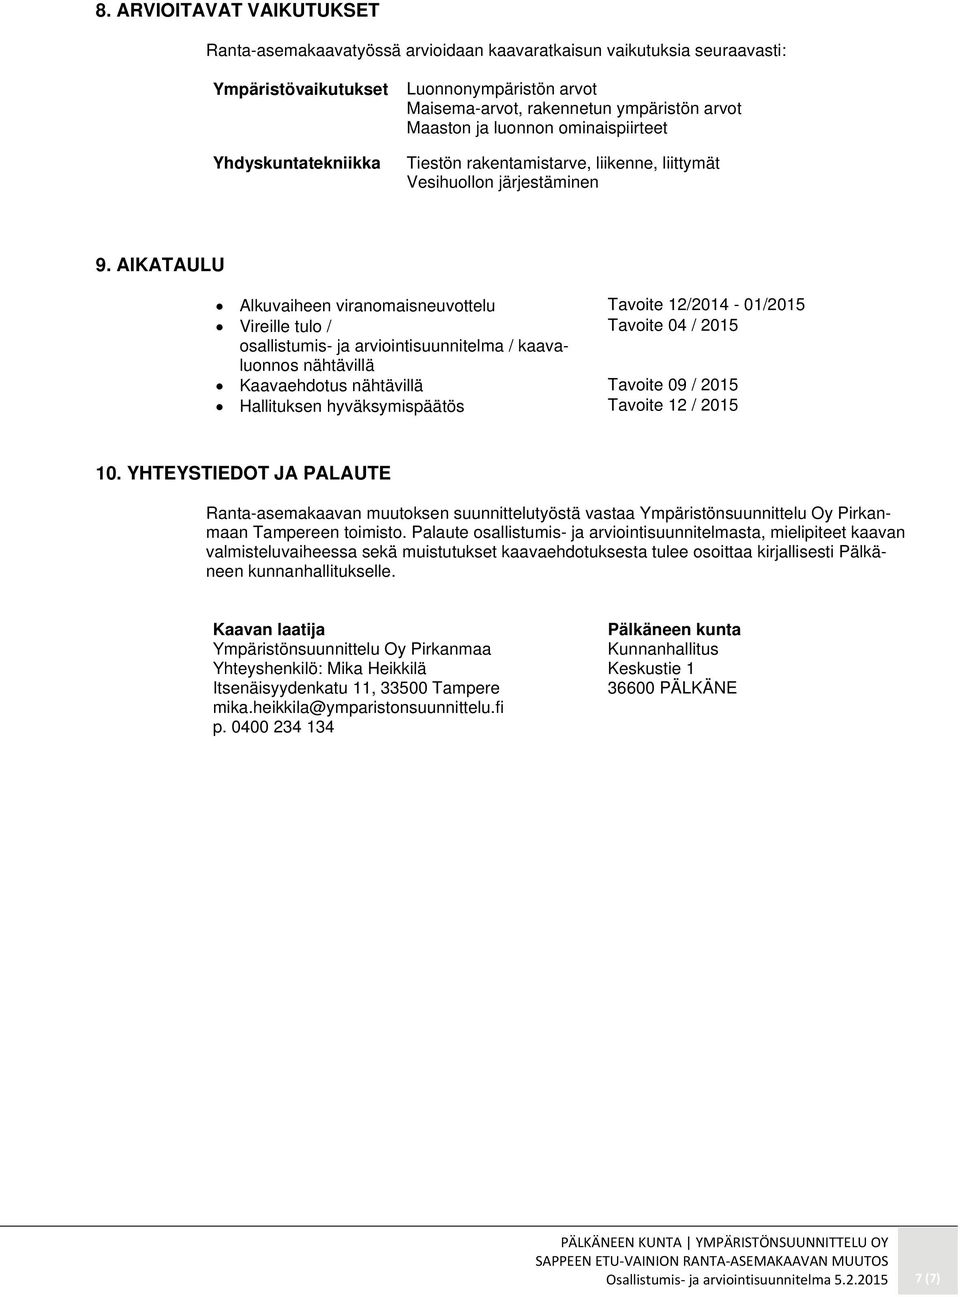 AIKATAULU Alkuvaiheen viranomaisneuvottelu Tavoite 12/2014-01/2015 Vireille tulo / Tavoite 04 / 2015 osallistumis- ja arviointisuunnitelma / kaavaluonnos nähtävillä Kaavaehdotus nähtävillä Tavoite 09